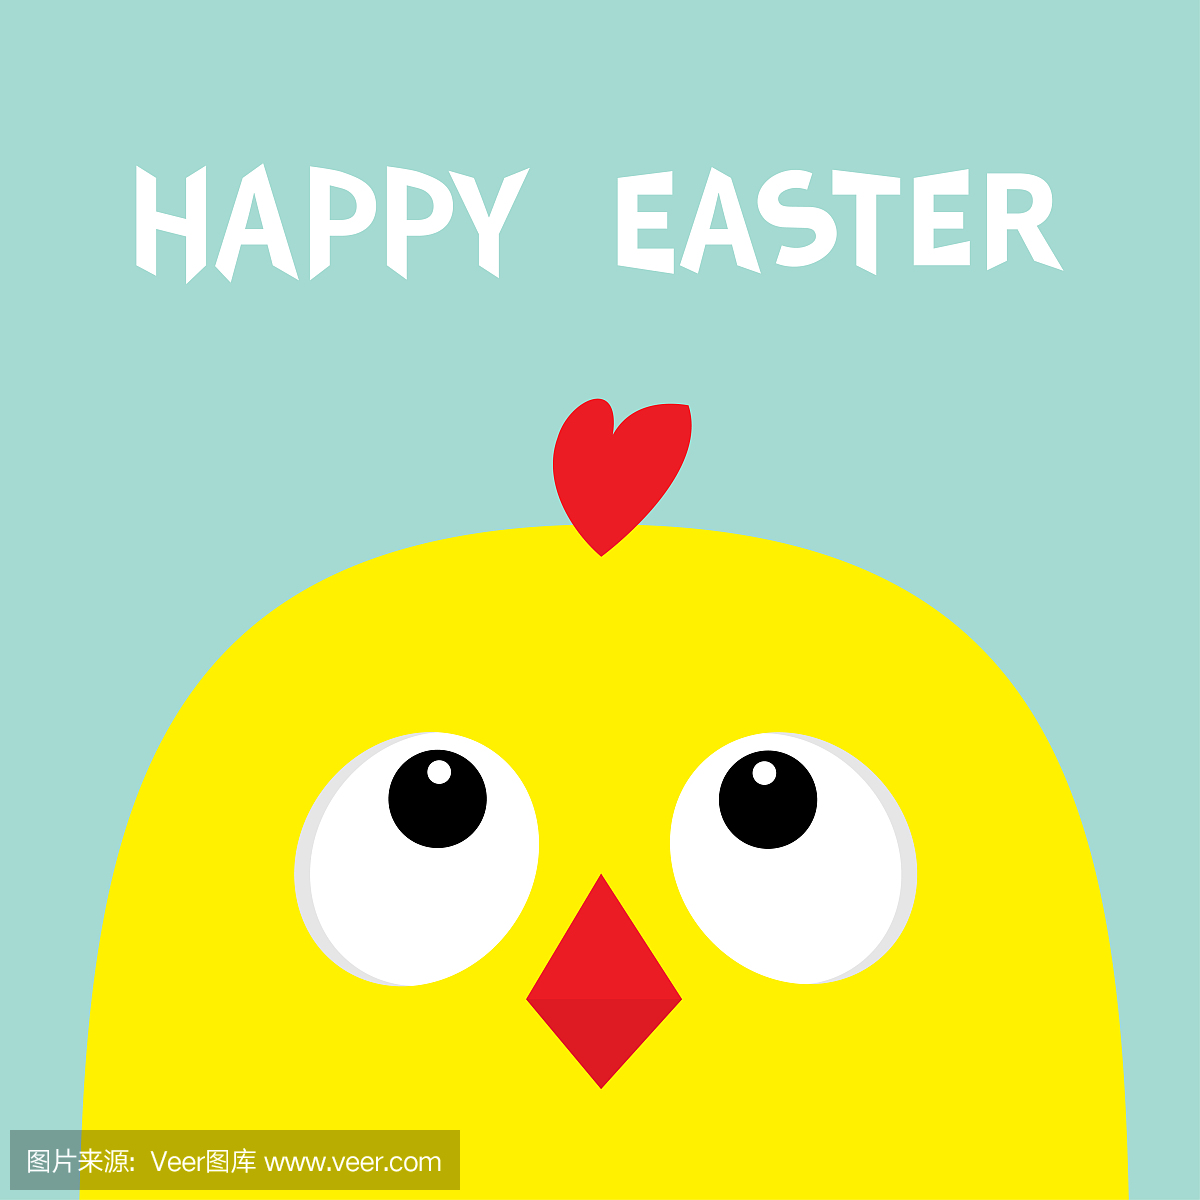 复活节快乐标志符号。鸡头脸大眼睛红喙仰望。